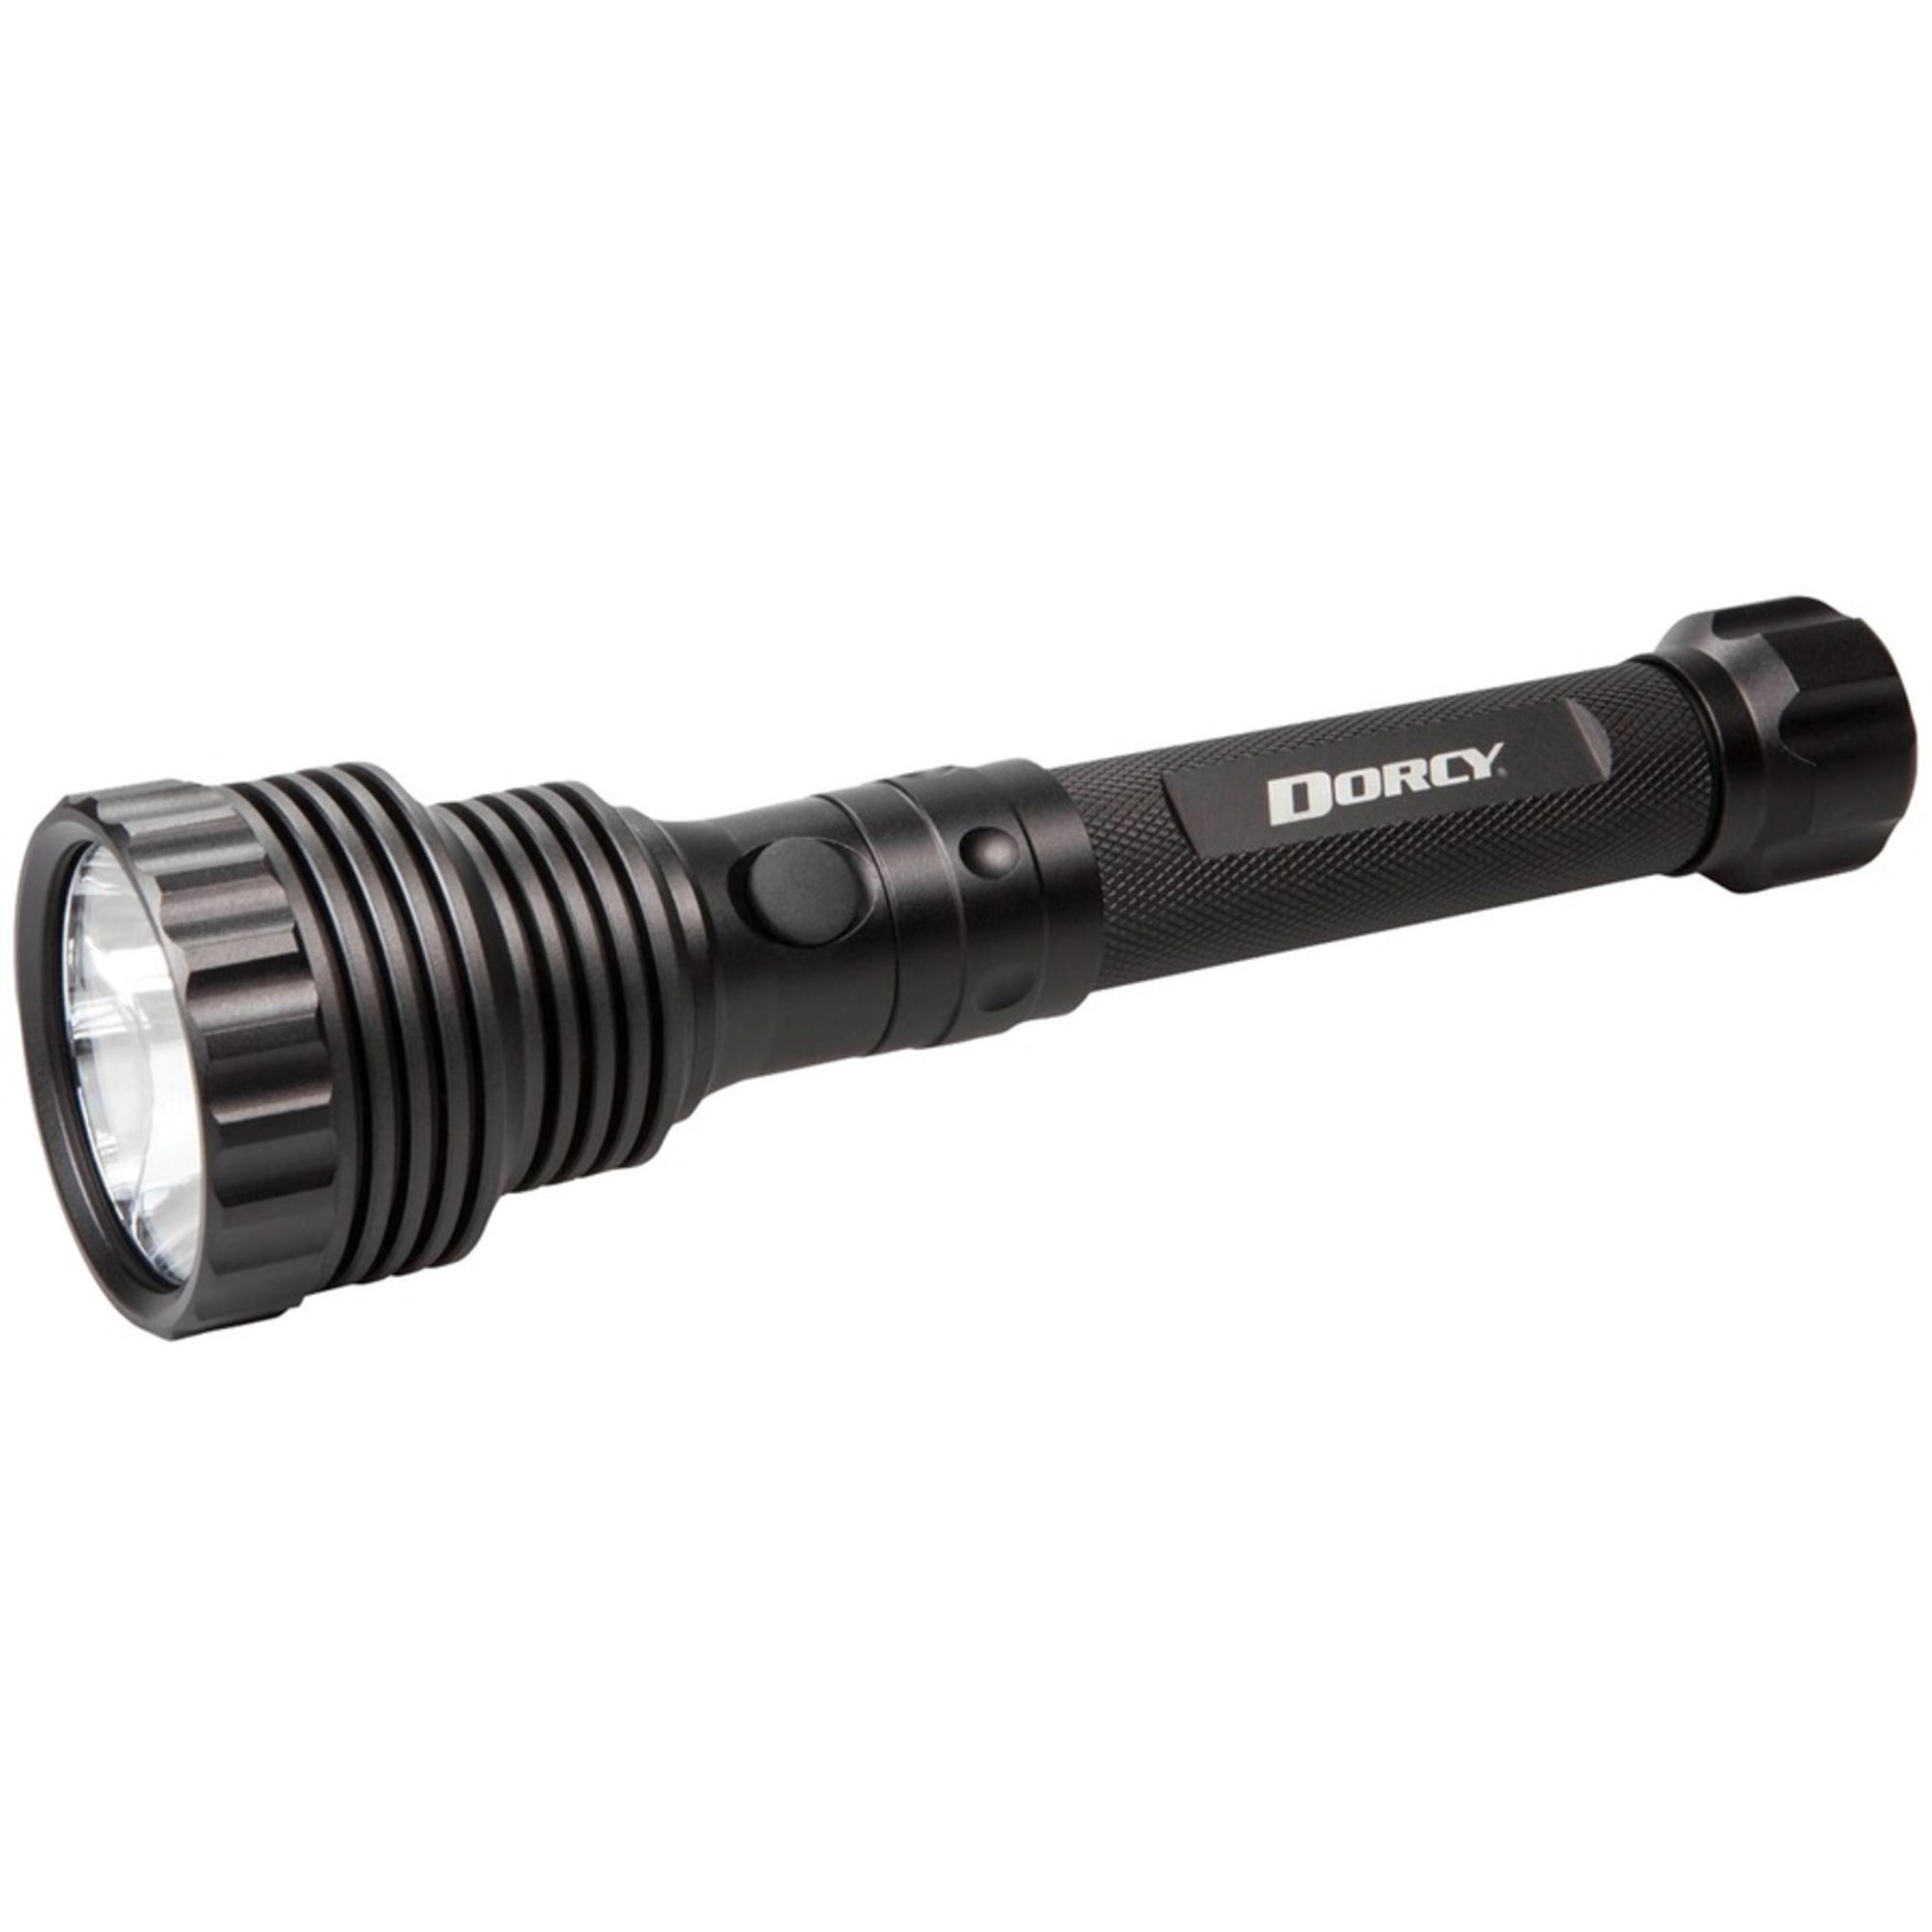 Dorcy LED 1600 Lumen Flashlight and Powerbank - image 2 of 7